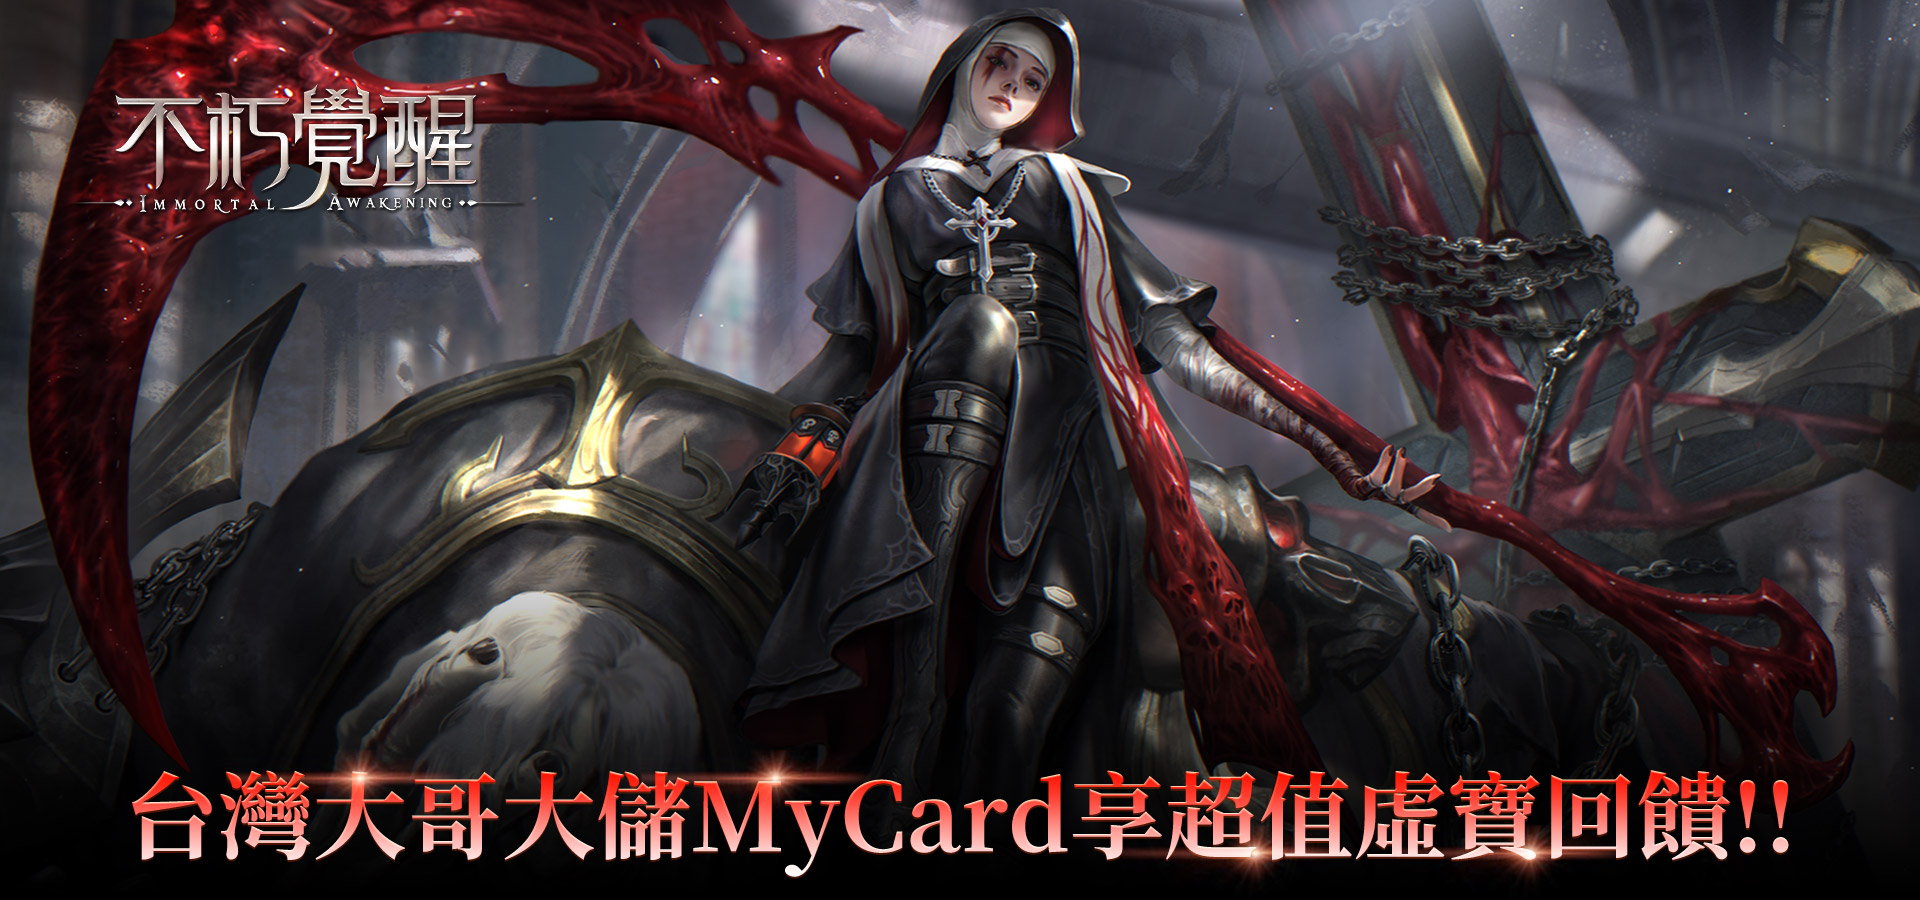   《不朽覺醒》MyCard儲值享超值虛寶回饋!! | 台灣大哥大